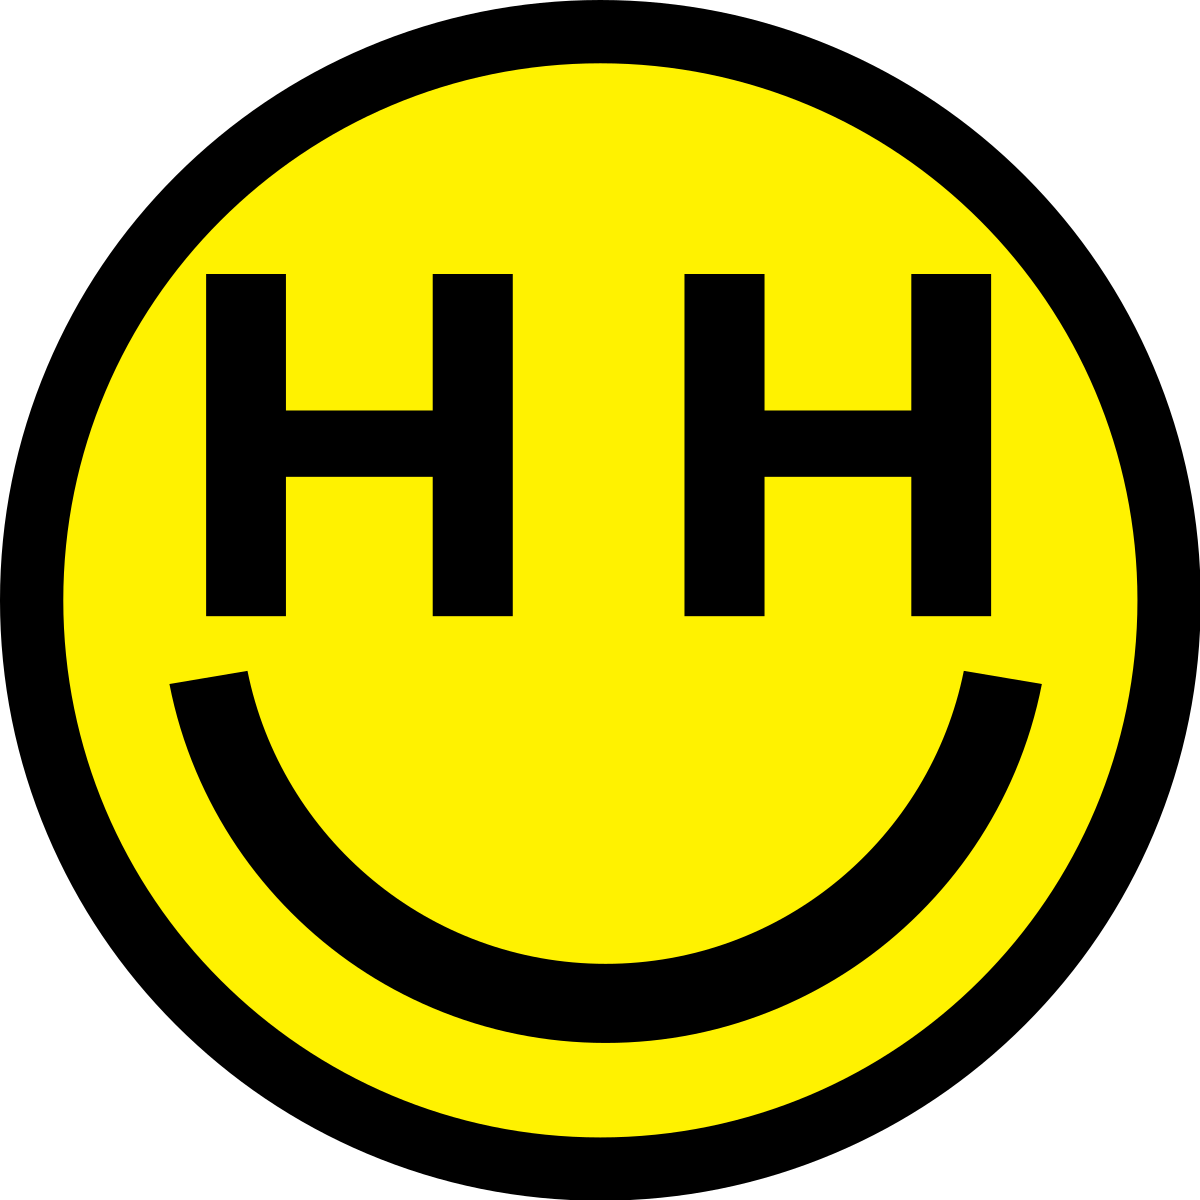 Happy Hippie Foundation Wikipedia